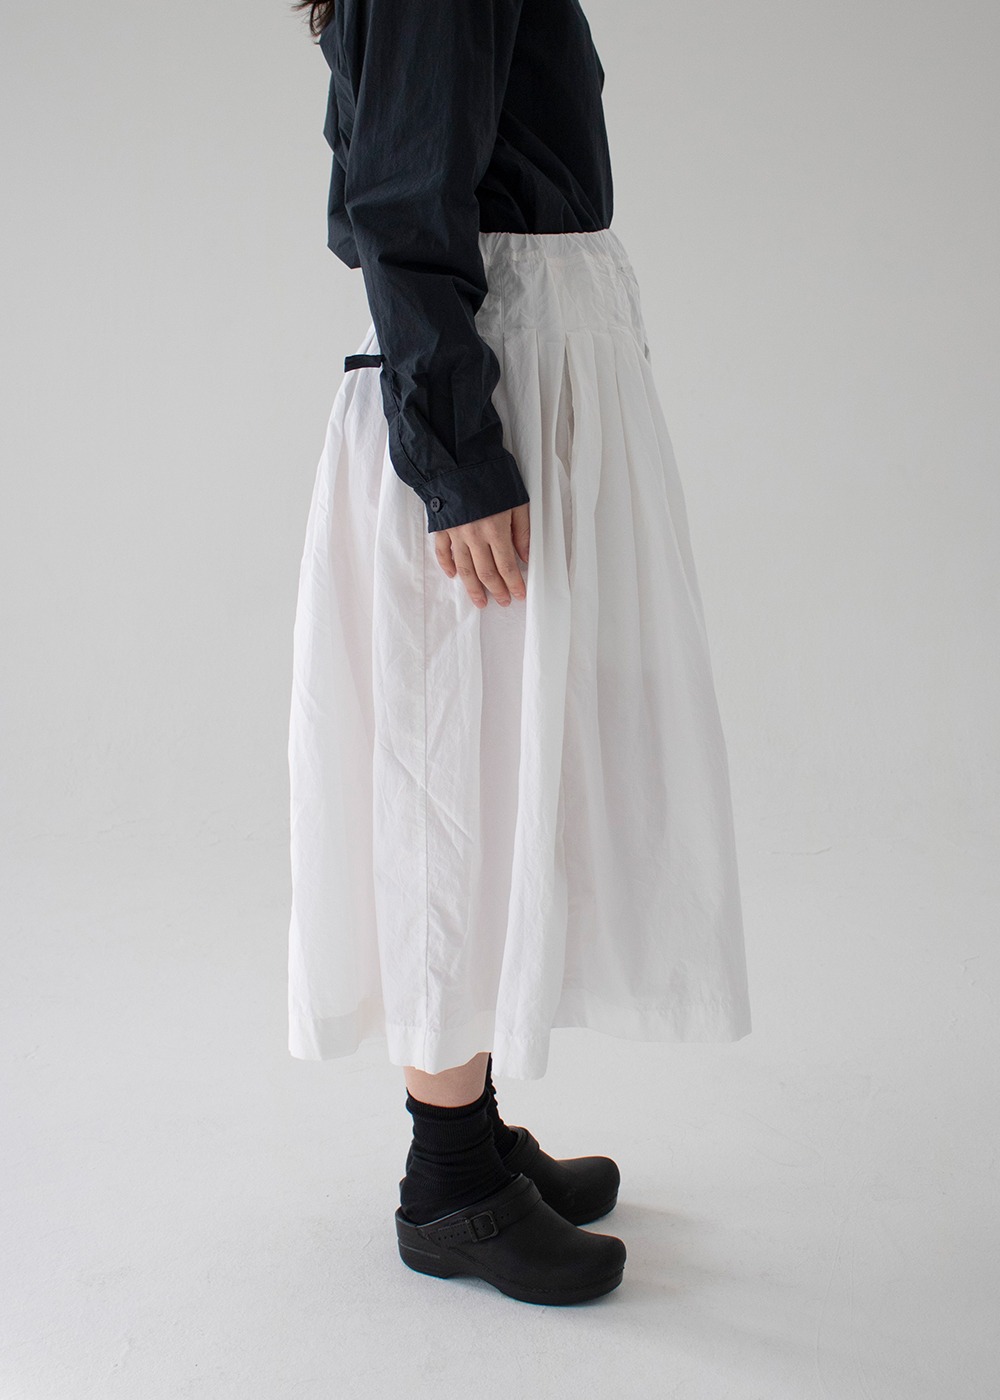 Farmer Skirt - White